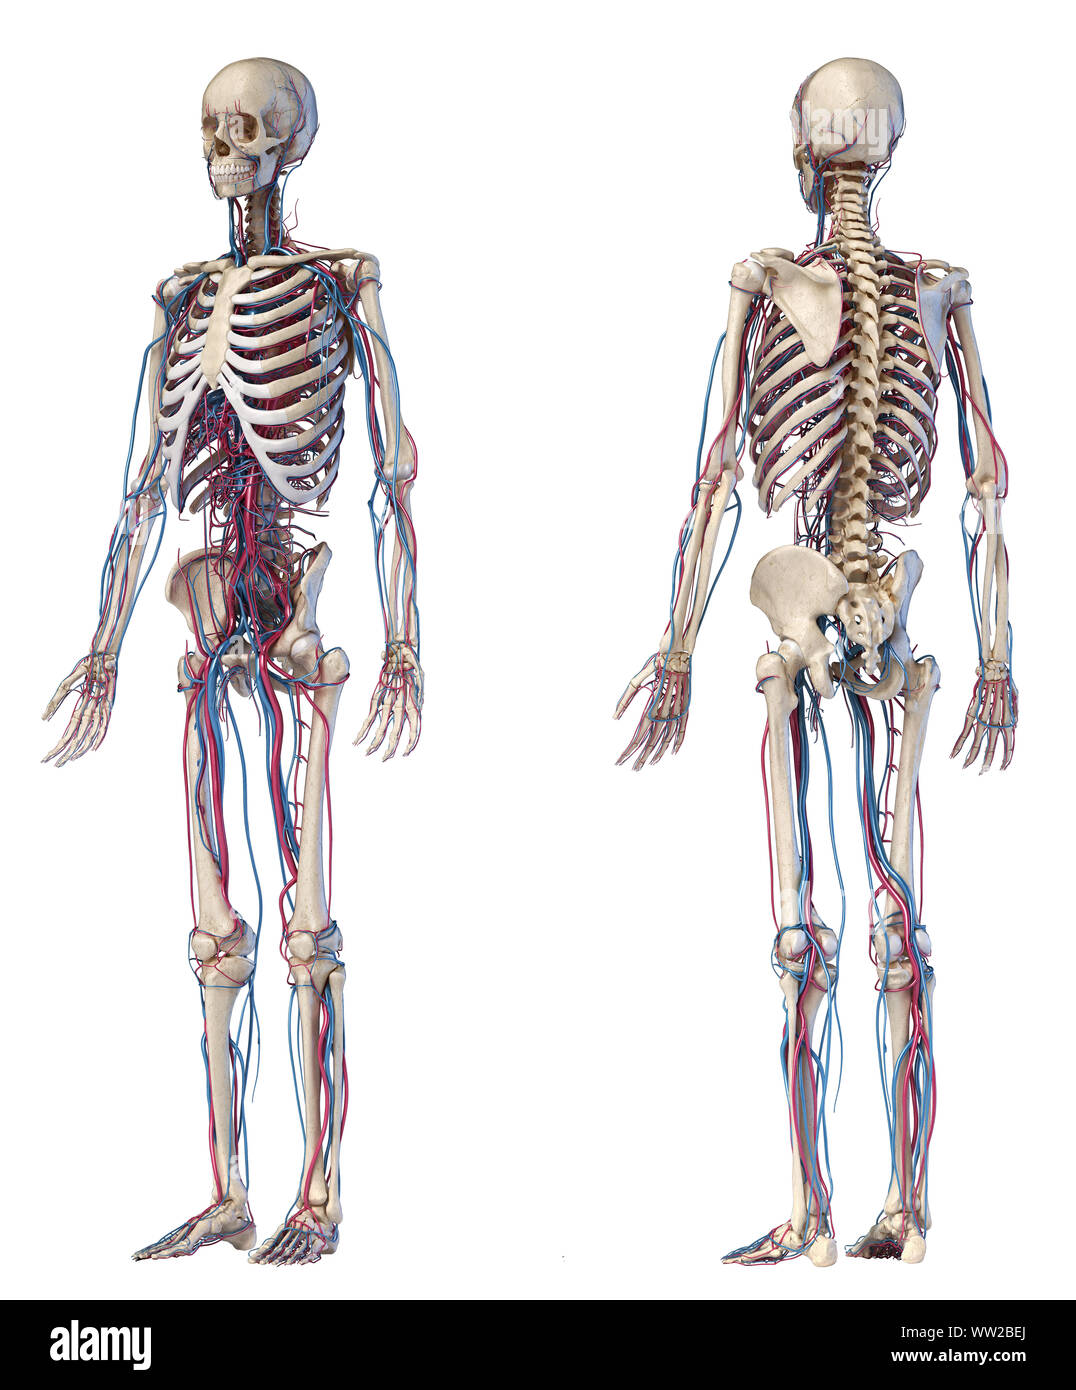 Menschliche Körper Anatomie. 3D-Darstellung von Knochen- und Herz-Kreislauf-System. Vorder- und Rückseite perspektivischen Ansichten. Auf weissem Hintergrund. Stockfoto